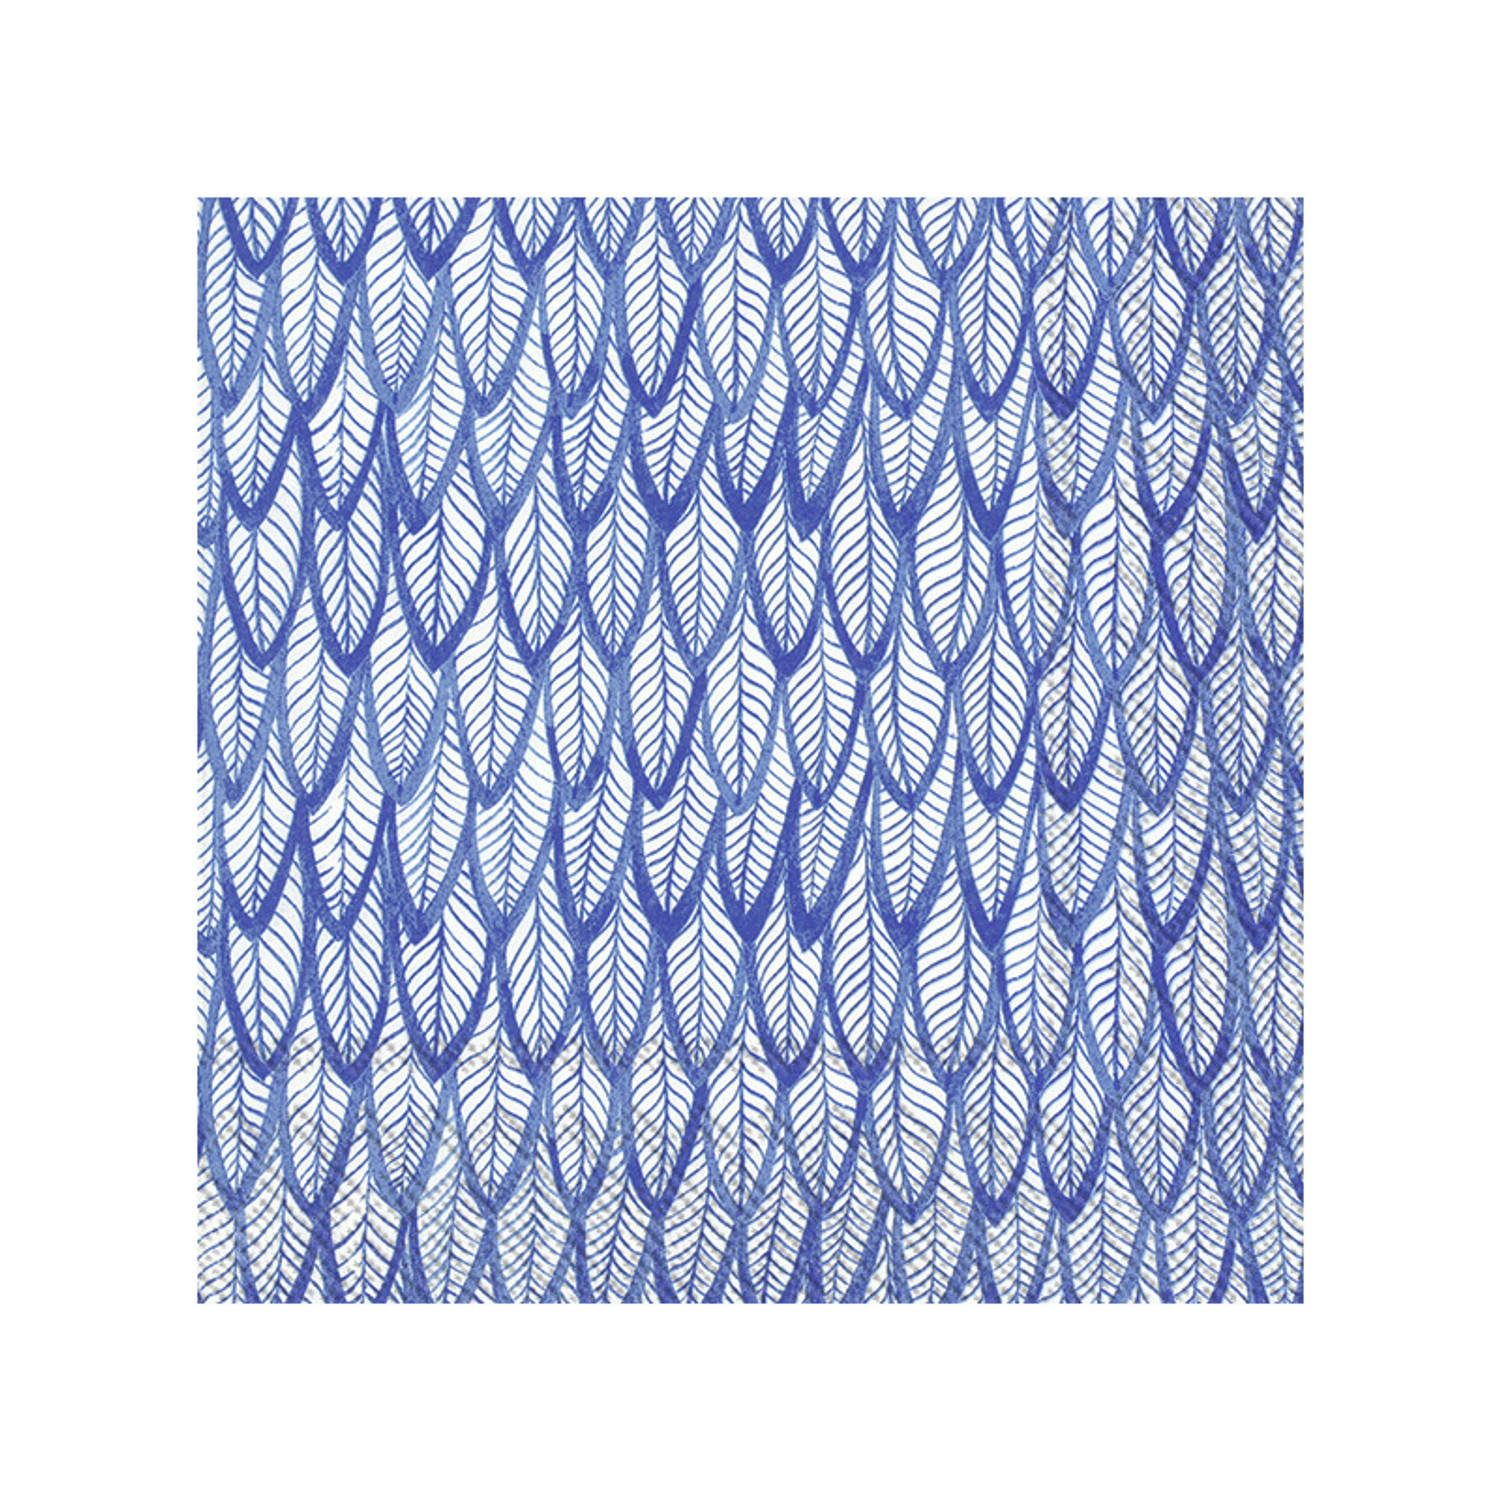 20x Blauwe 3-laags servetten veren 33 x 33 cm - Voorjaar/lente thema